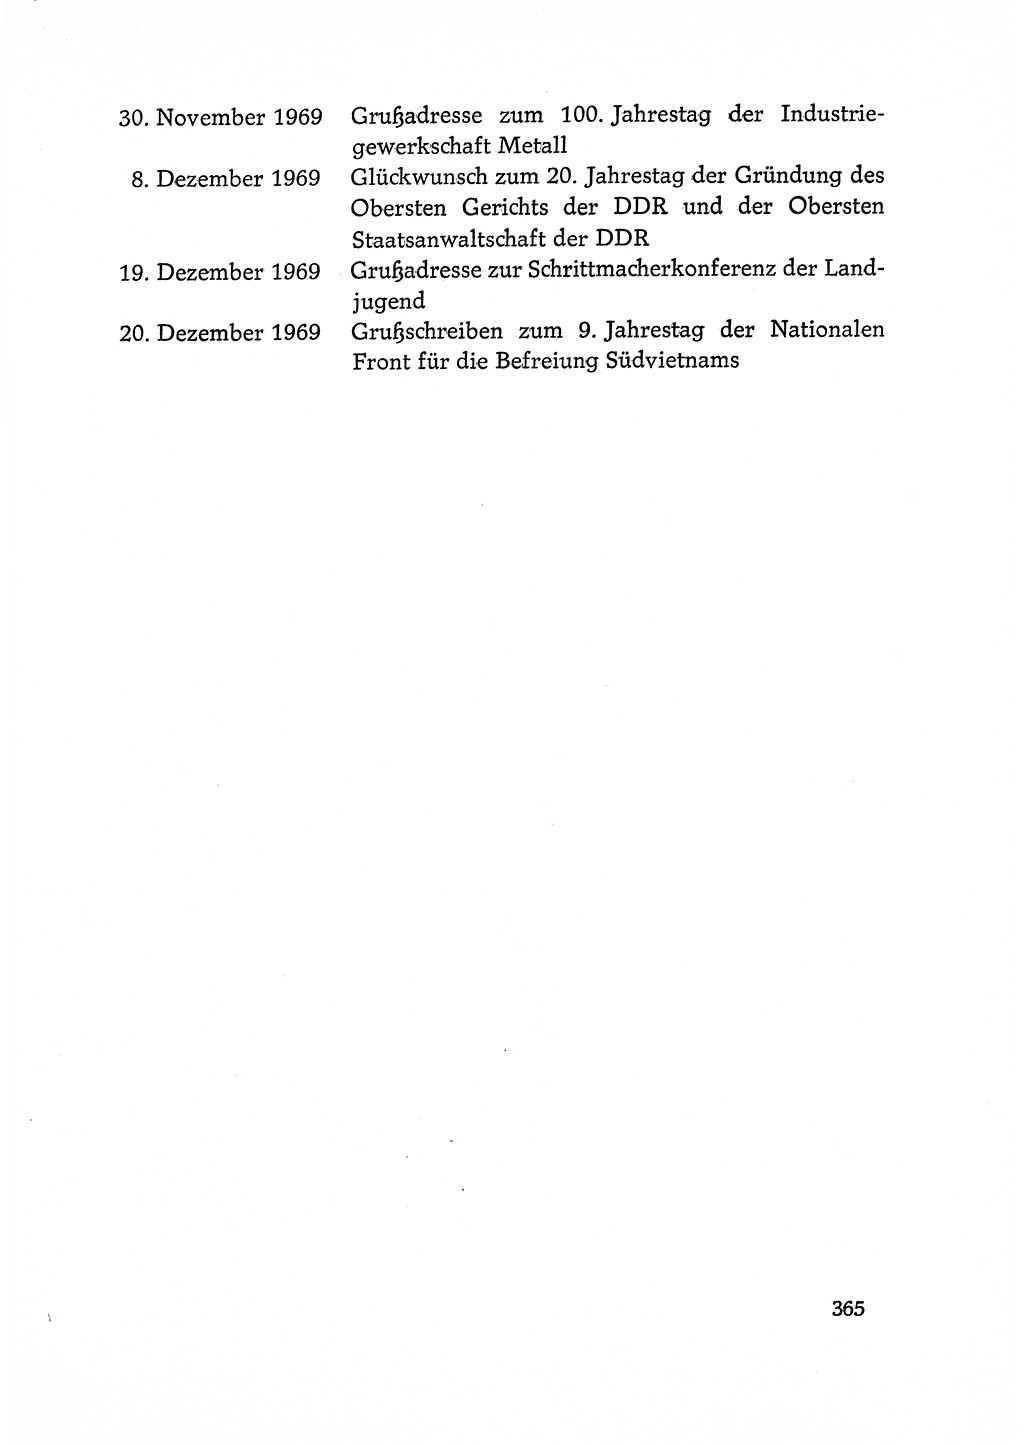 Dokumente der Sozialistischen Einheitspartei Deutschlands (SED) [Deutsche Demokratische Republik (DDR)] 1968-1969, Seite 365 (Dok. SED DDR 1968-1969, S. 365)